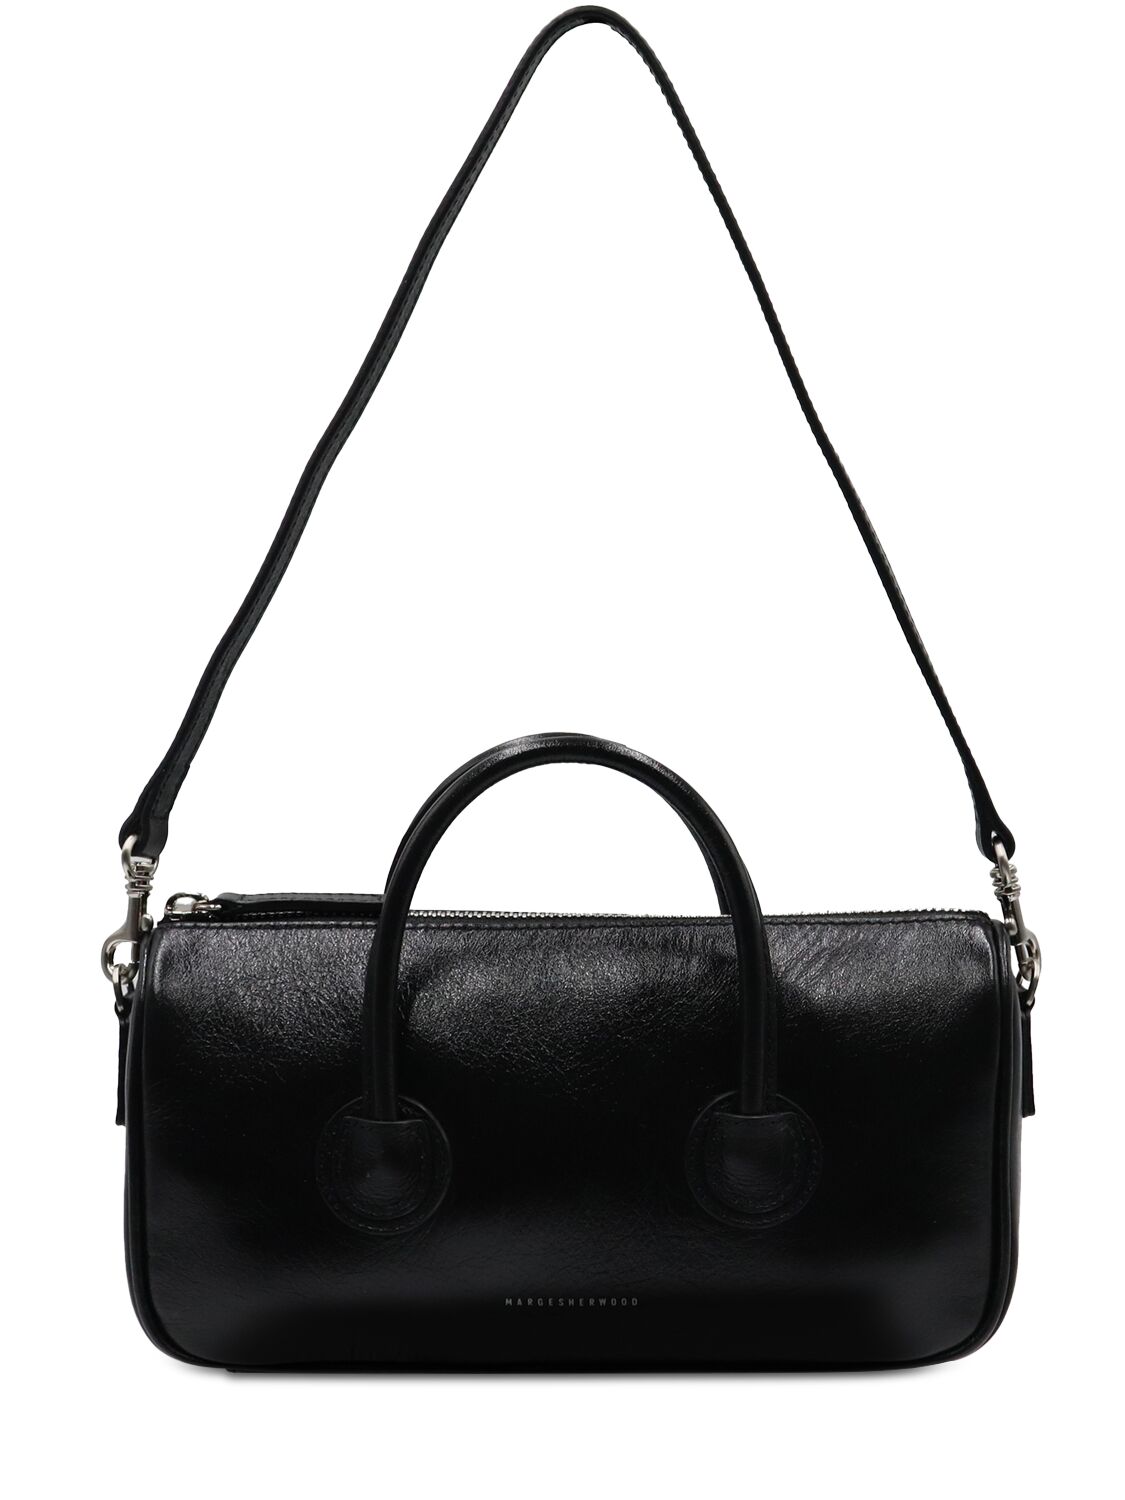 Marge Sherwood Small Zipper Bag - Glossy Black